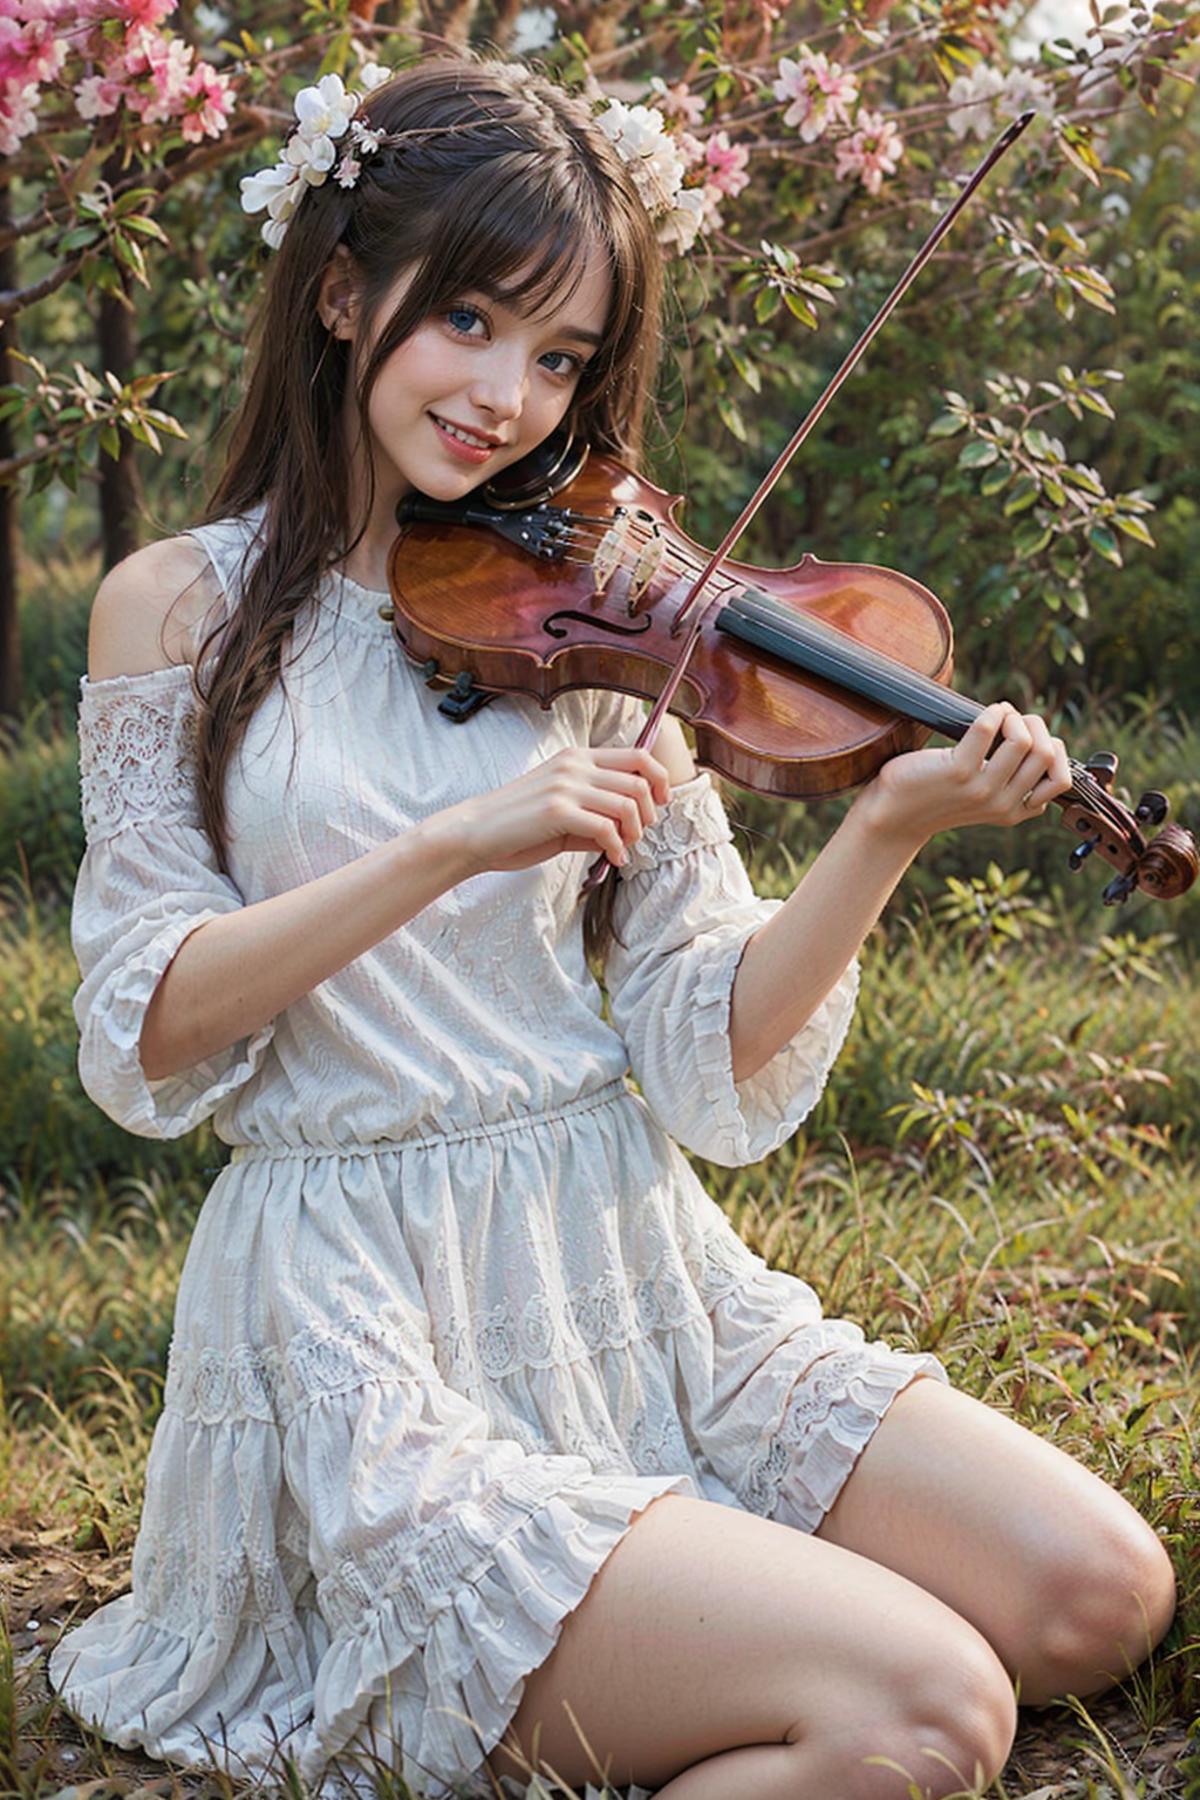 小提琴 | violin image by pizzagirl